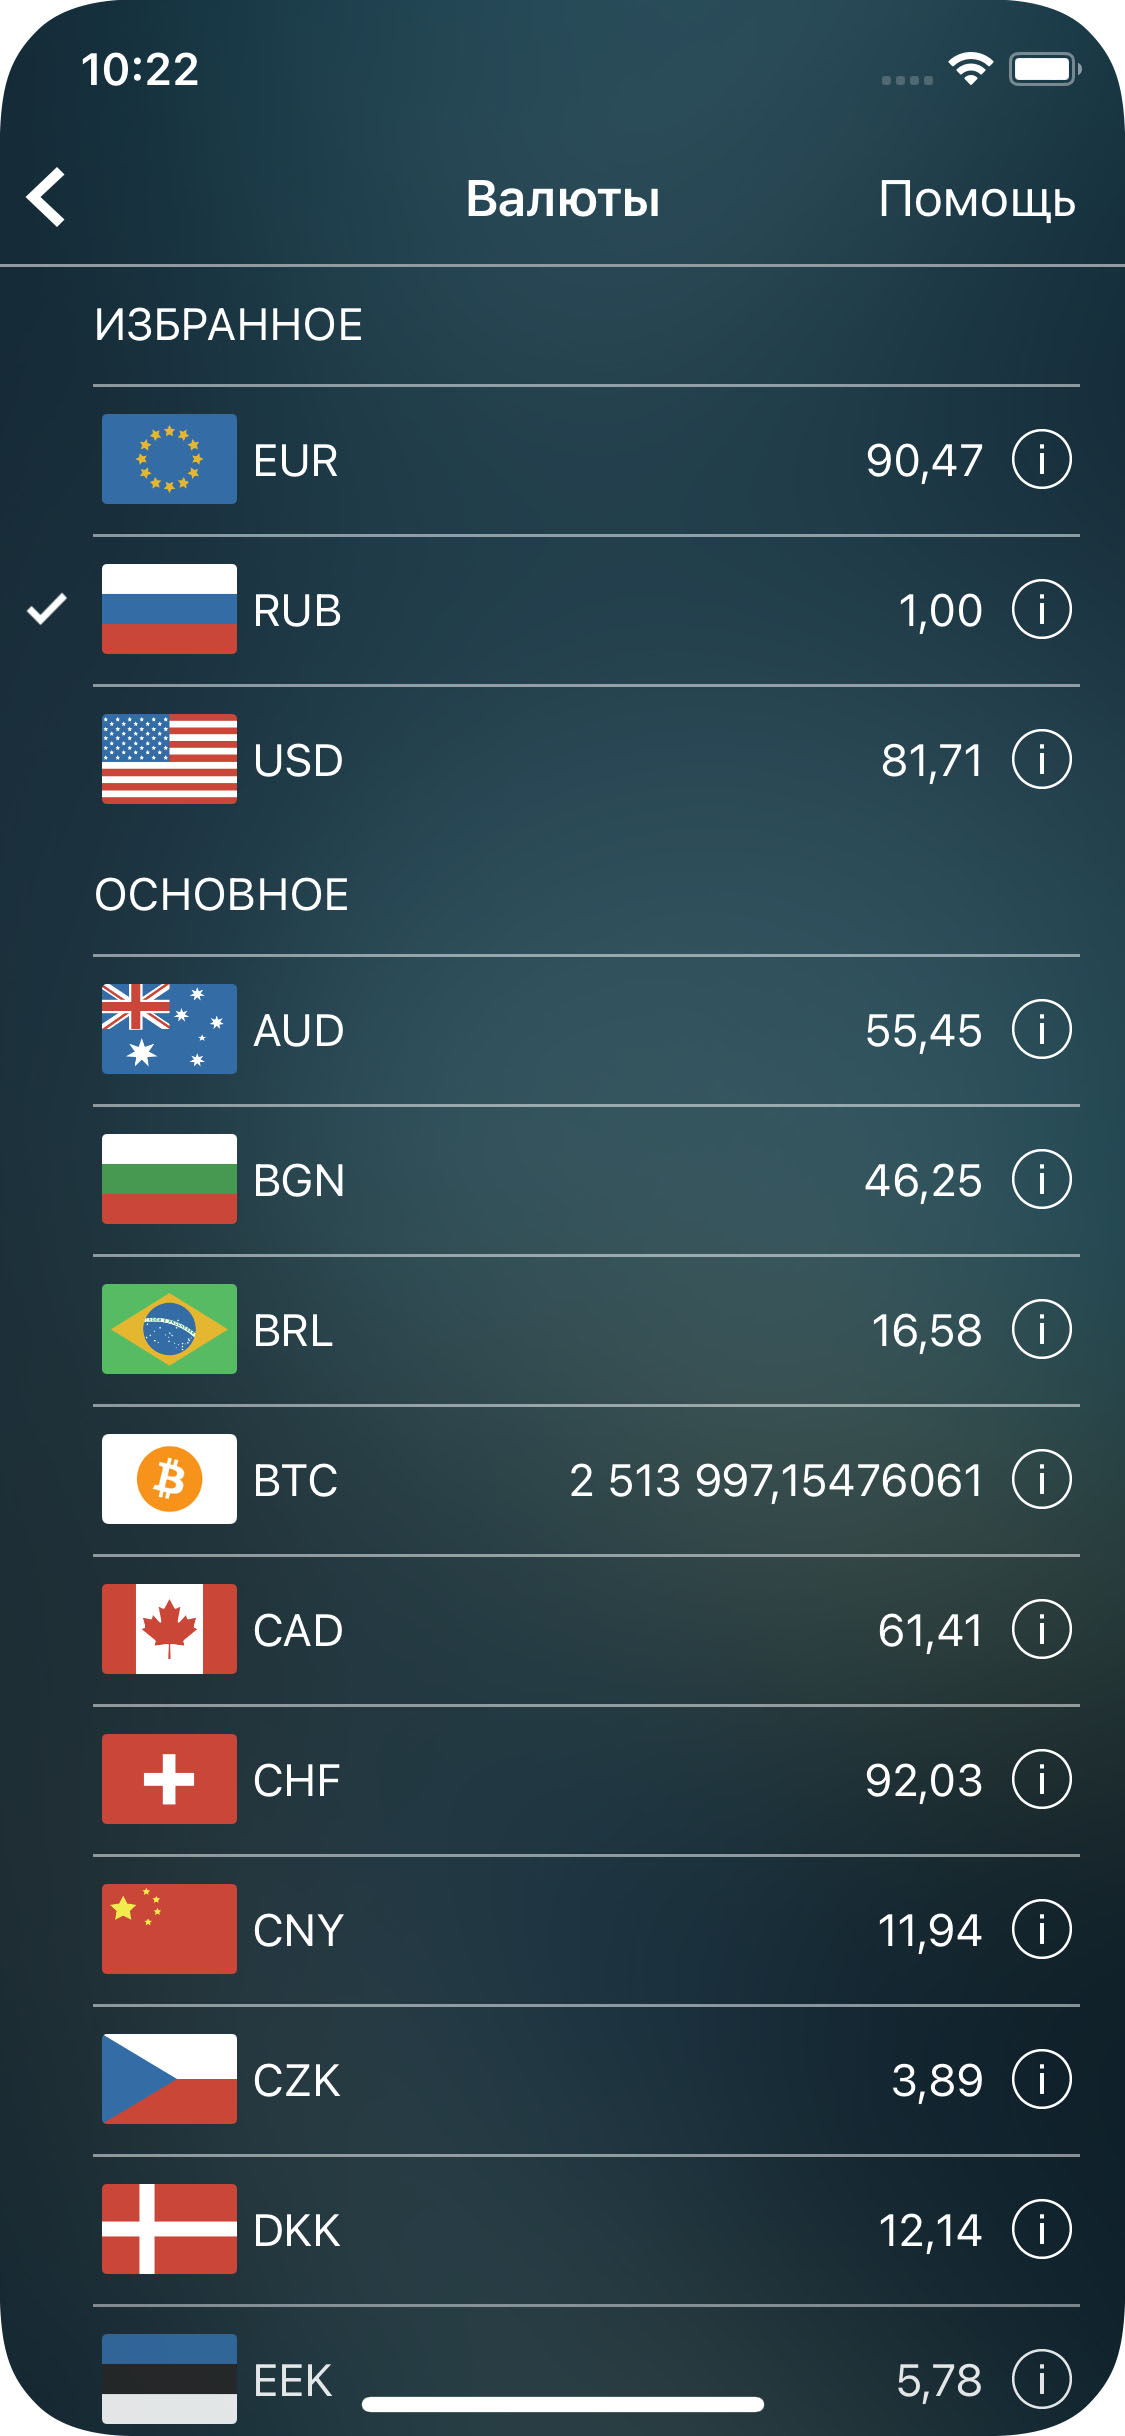 Money Pro - Конвертер валют - iPhone